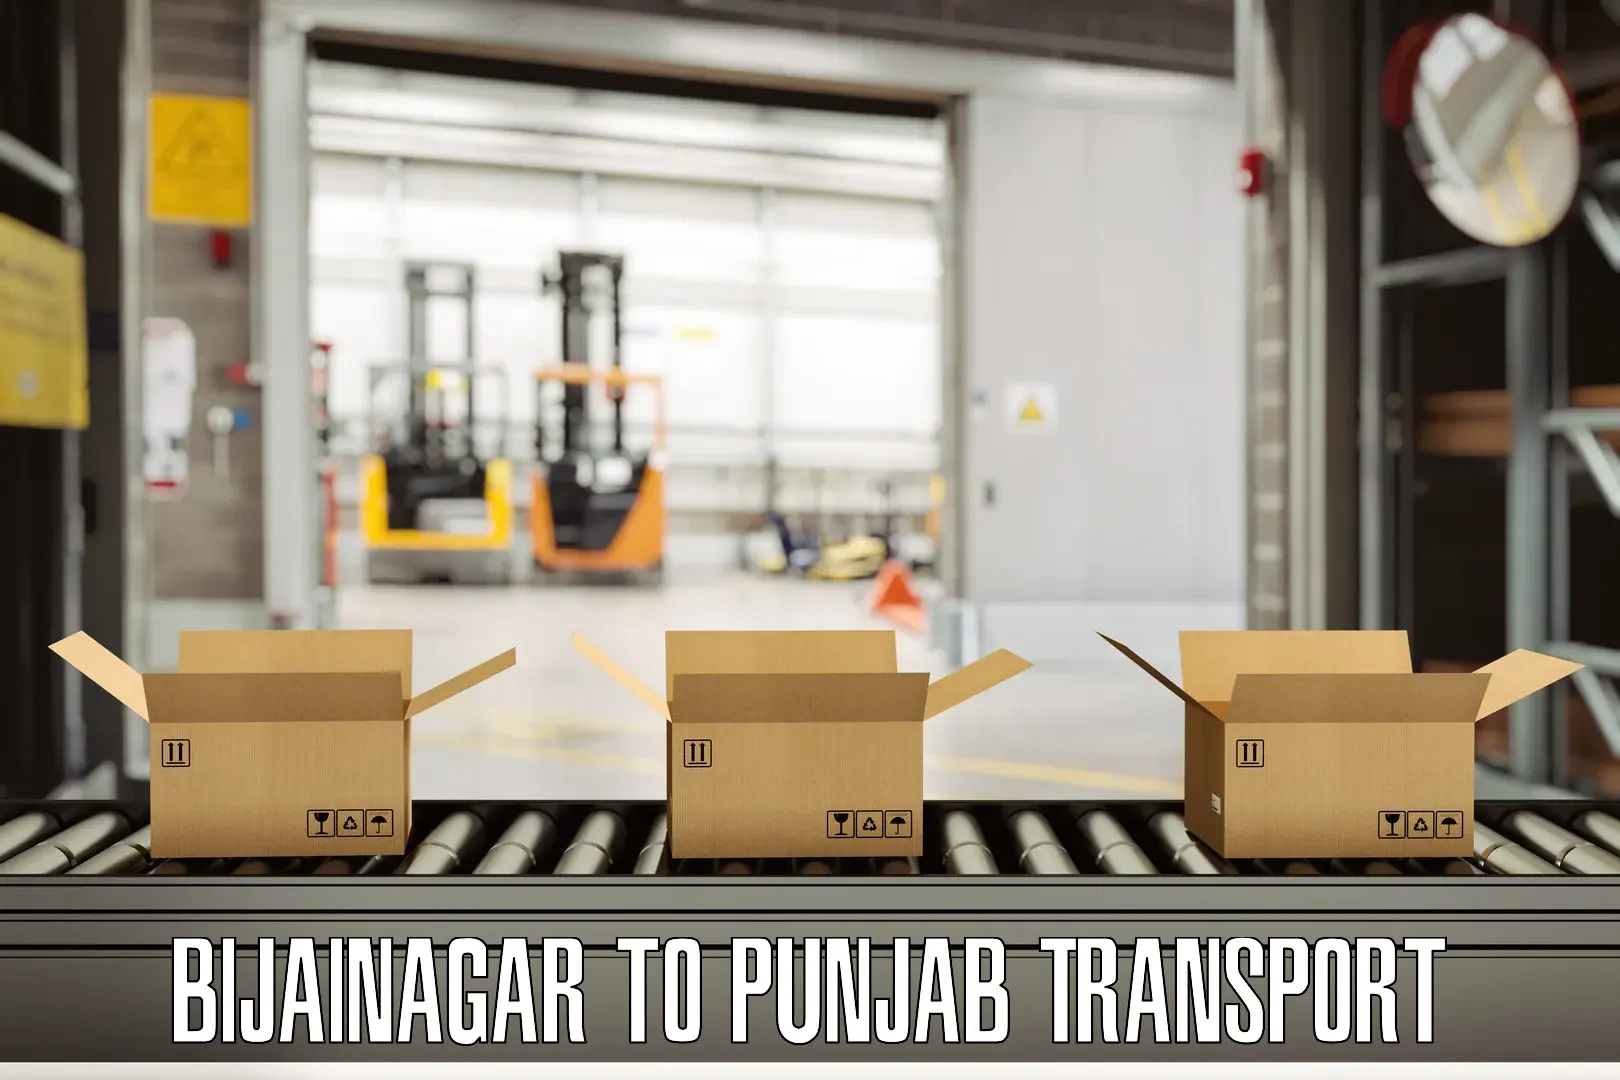 Daily transport service Bijainagar to Punjab